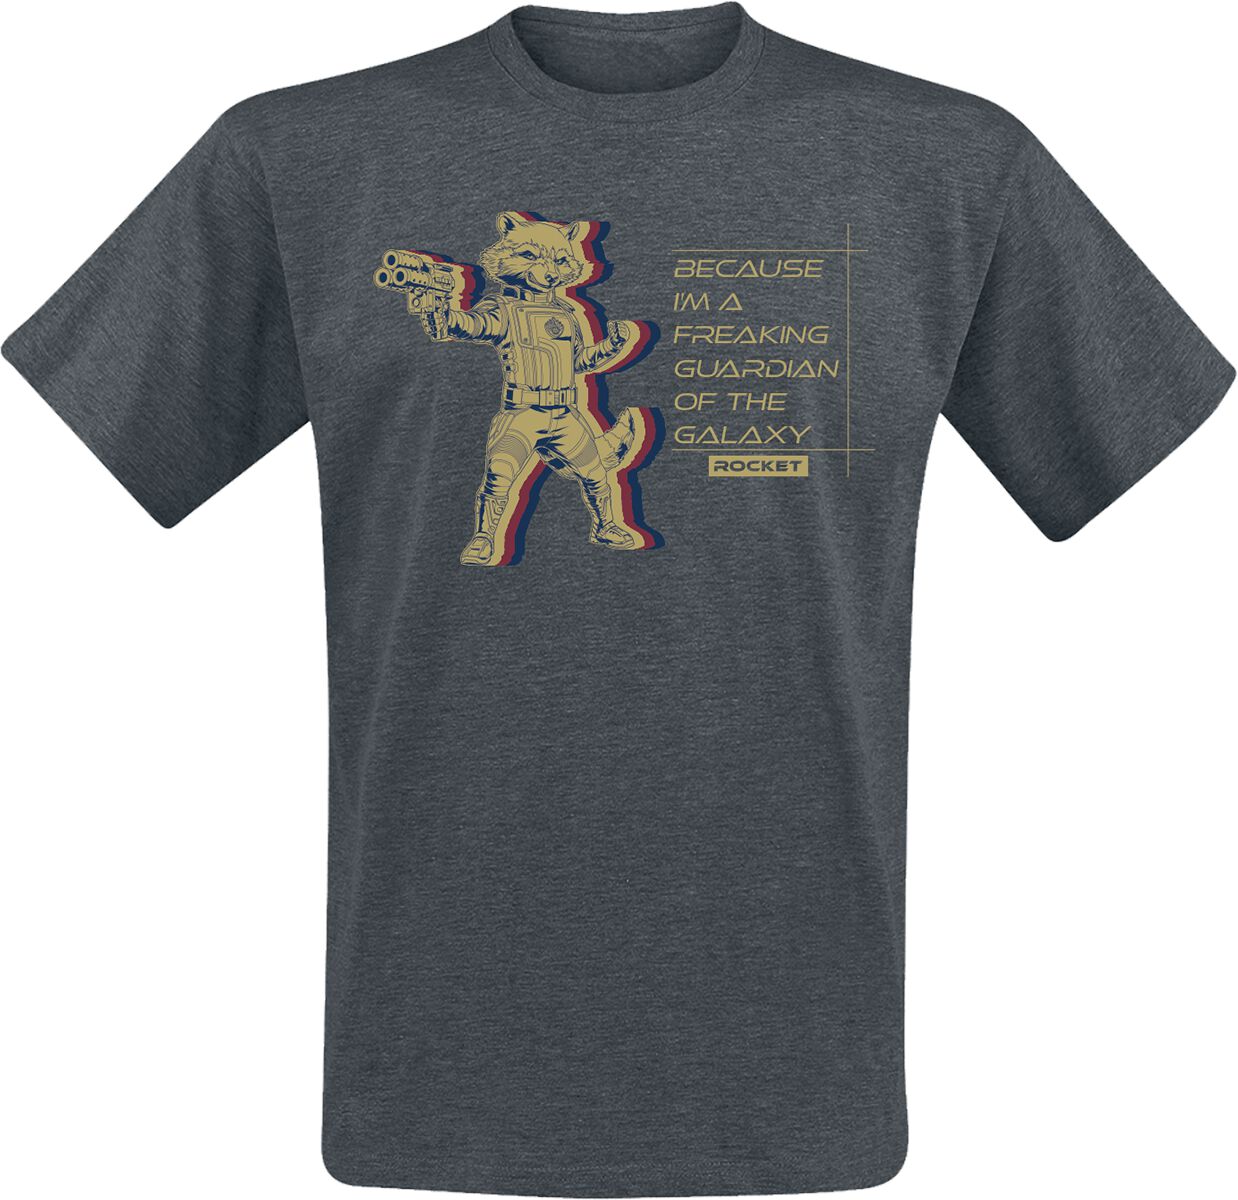 Guardians Of The Galaxy - Marvel T-Shirt - Vol. 3 - Rocket - S bis XXL - für Männer - Größe XL - grau  - EMP exklusives Merchandise!